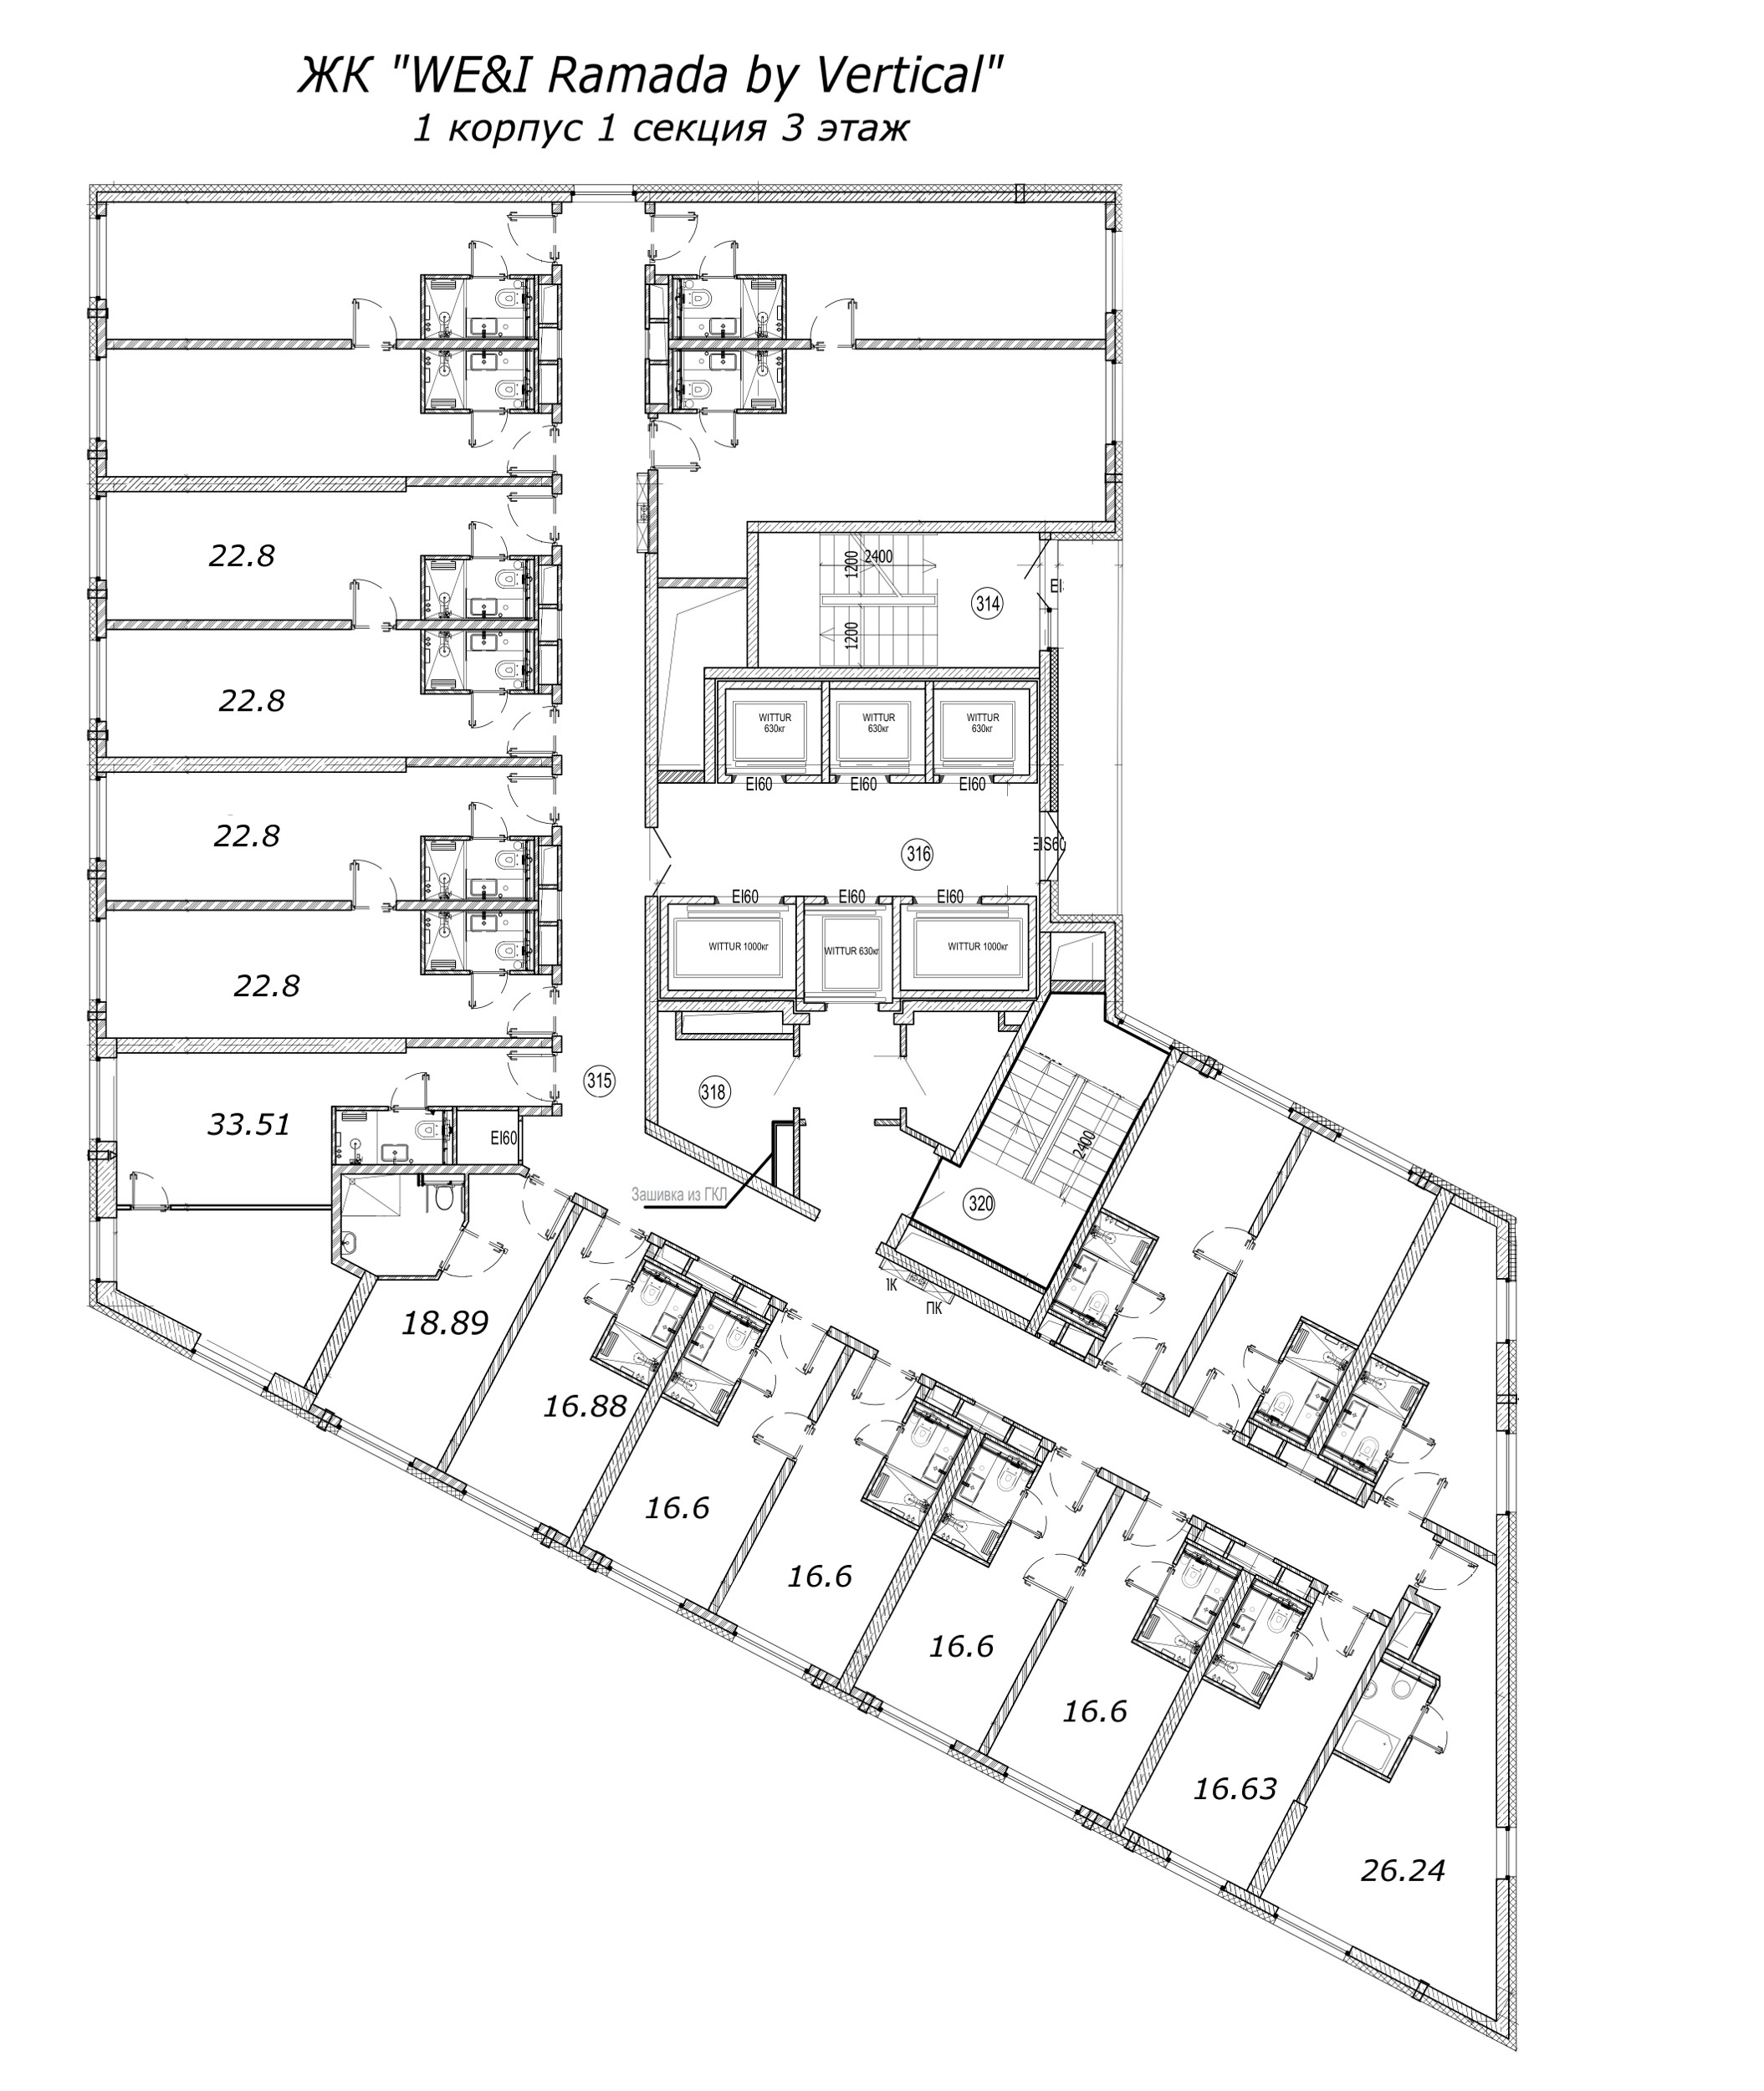 Квартира-студия, 16.6 м² в ЖК "WE&I Ramada by Vertical" - планировка этажа